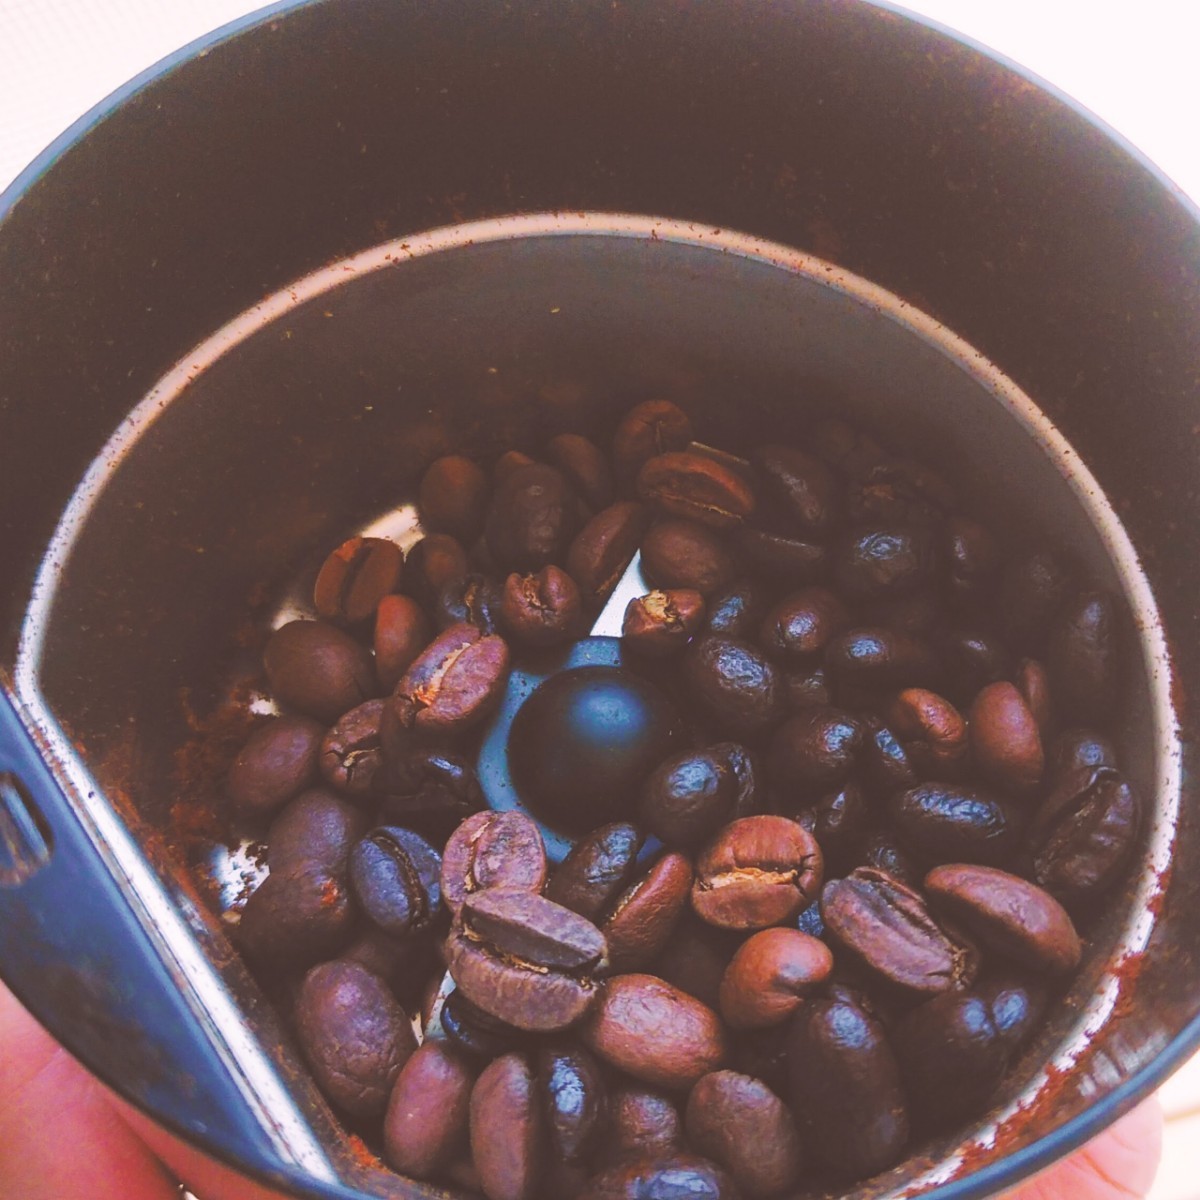 豆500g☆リム・アンドロメダエチオピアコーヒー☆完全野生種、原生林のコーヒー